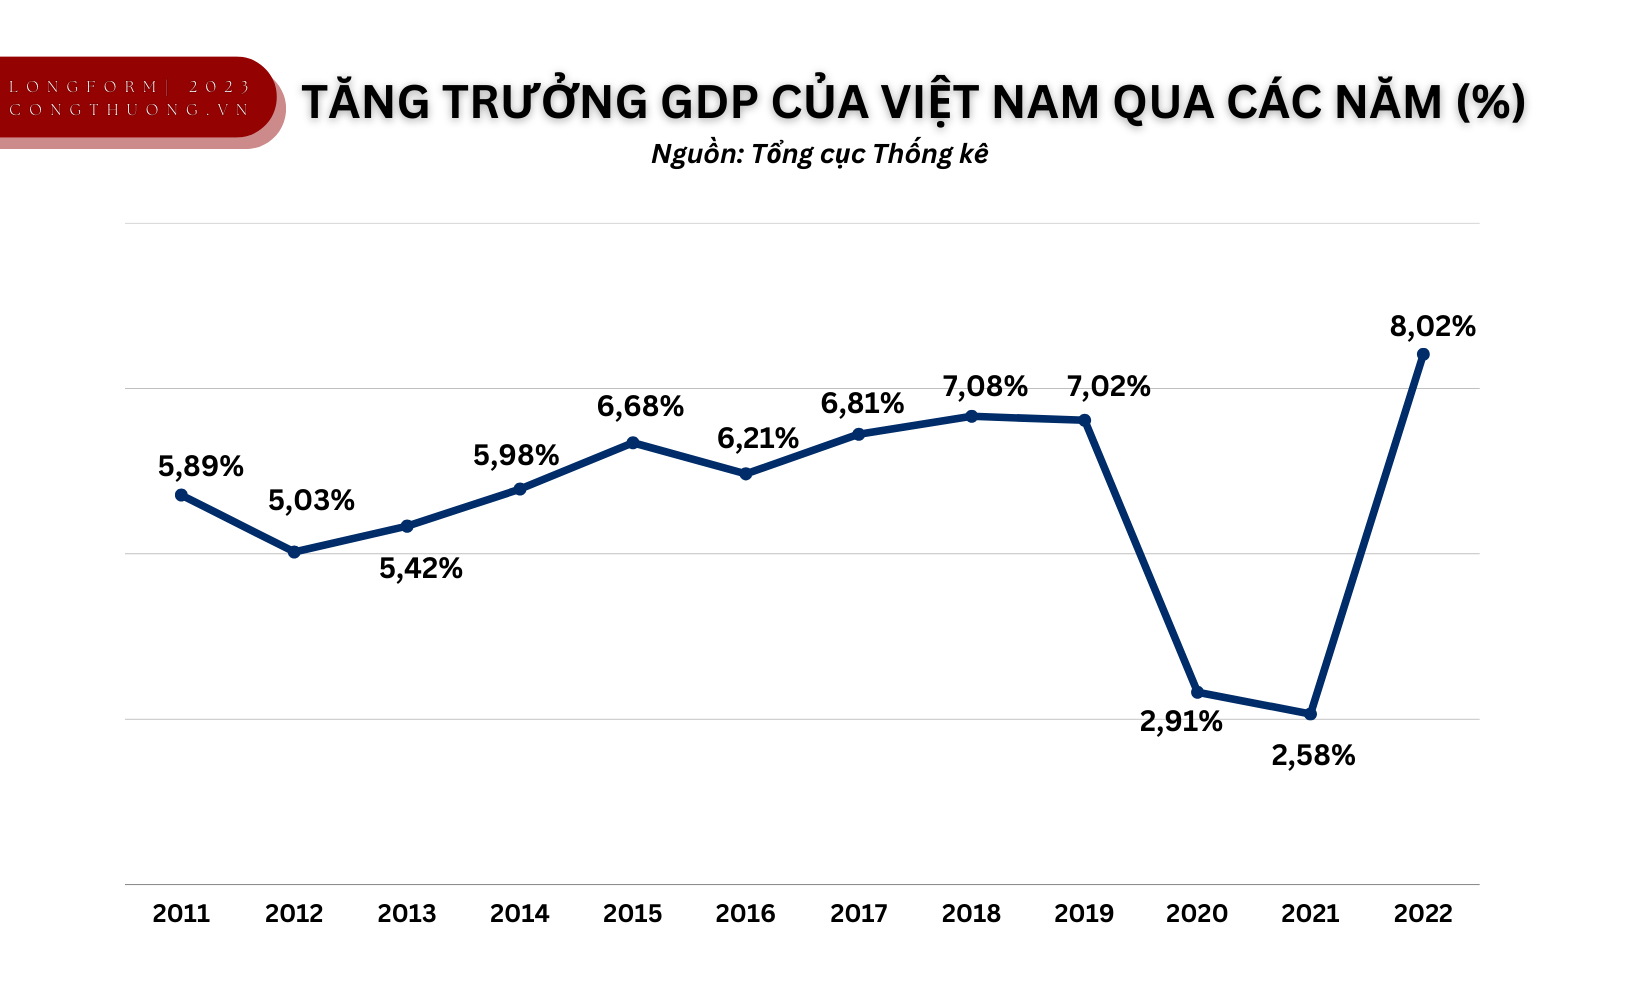 Longform | Ổn định vĩ mô làm nền cho tăng trưởng: Điểm nhìn Việt Nam, lan toả thế giới